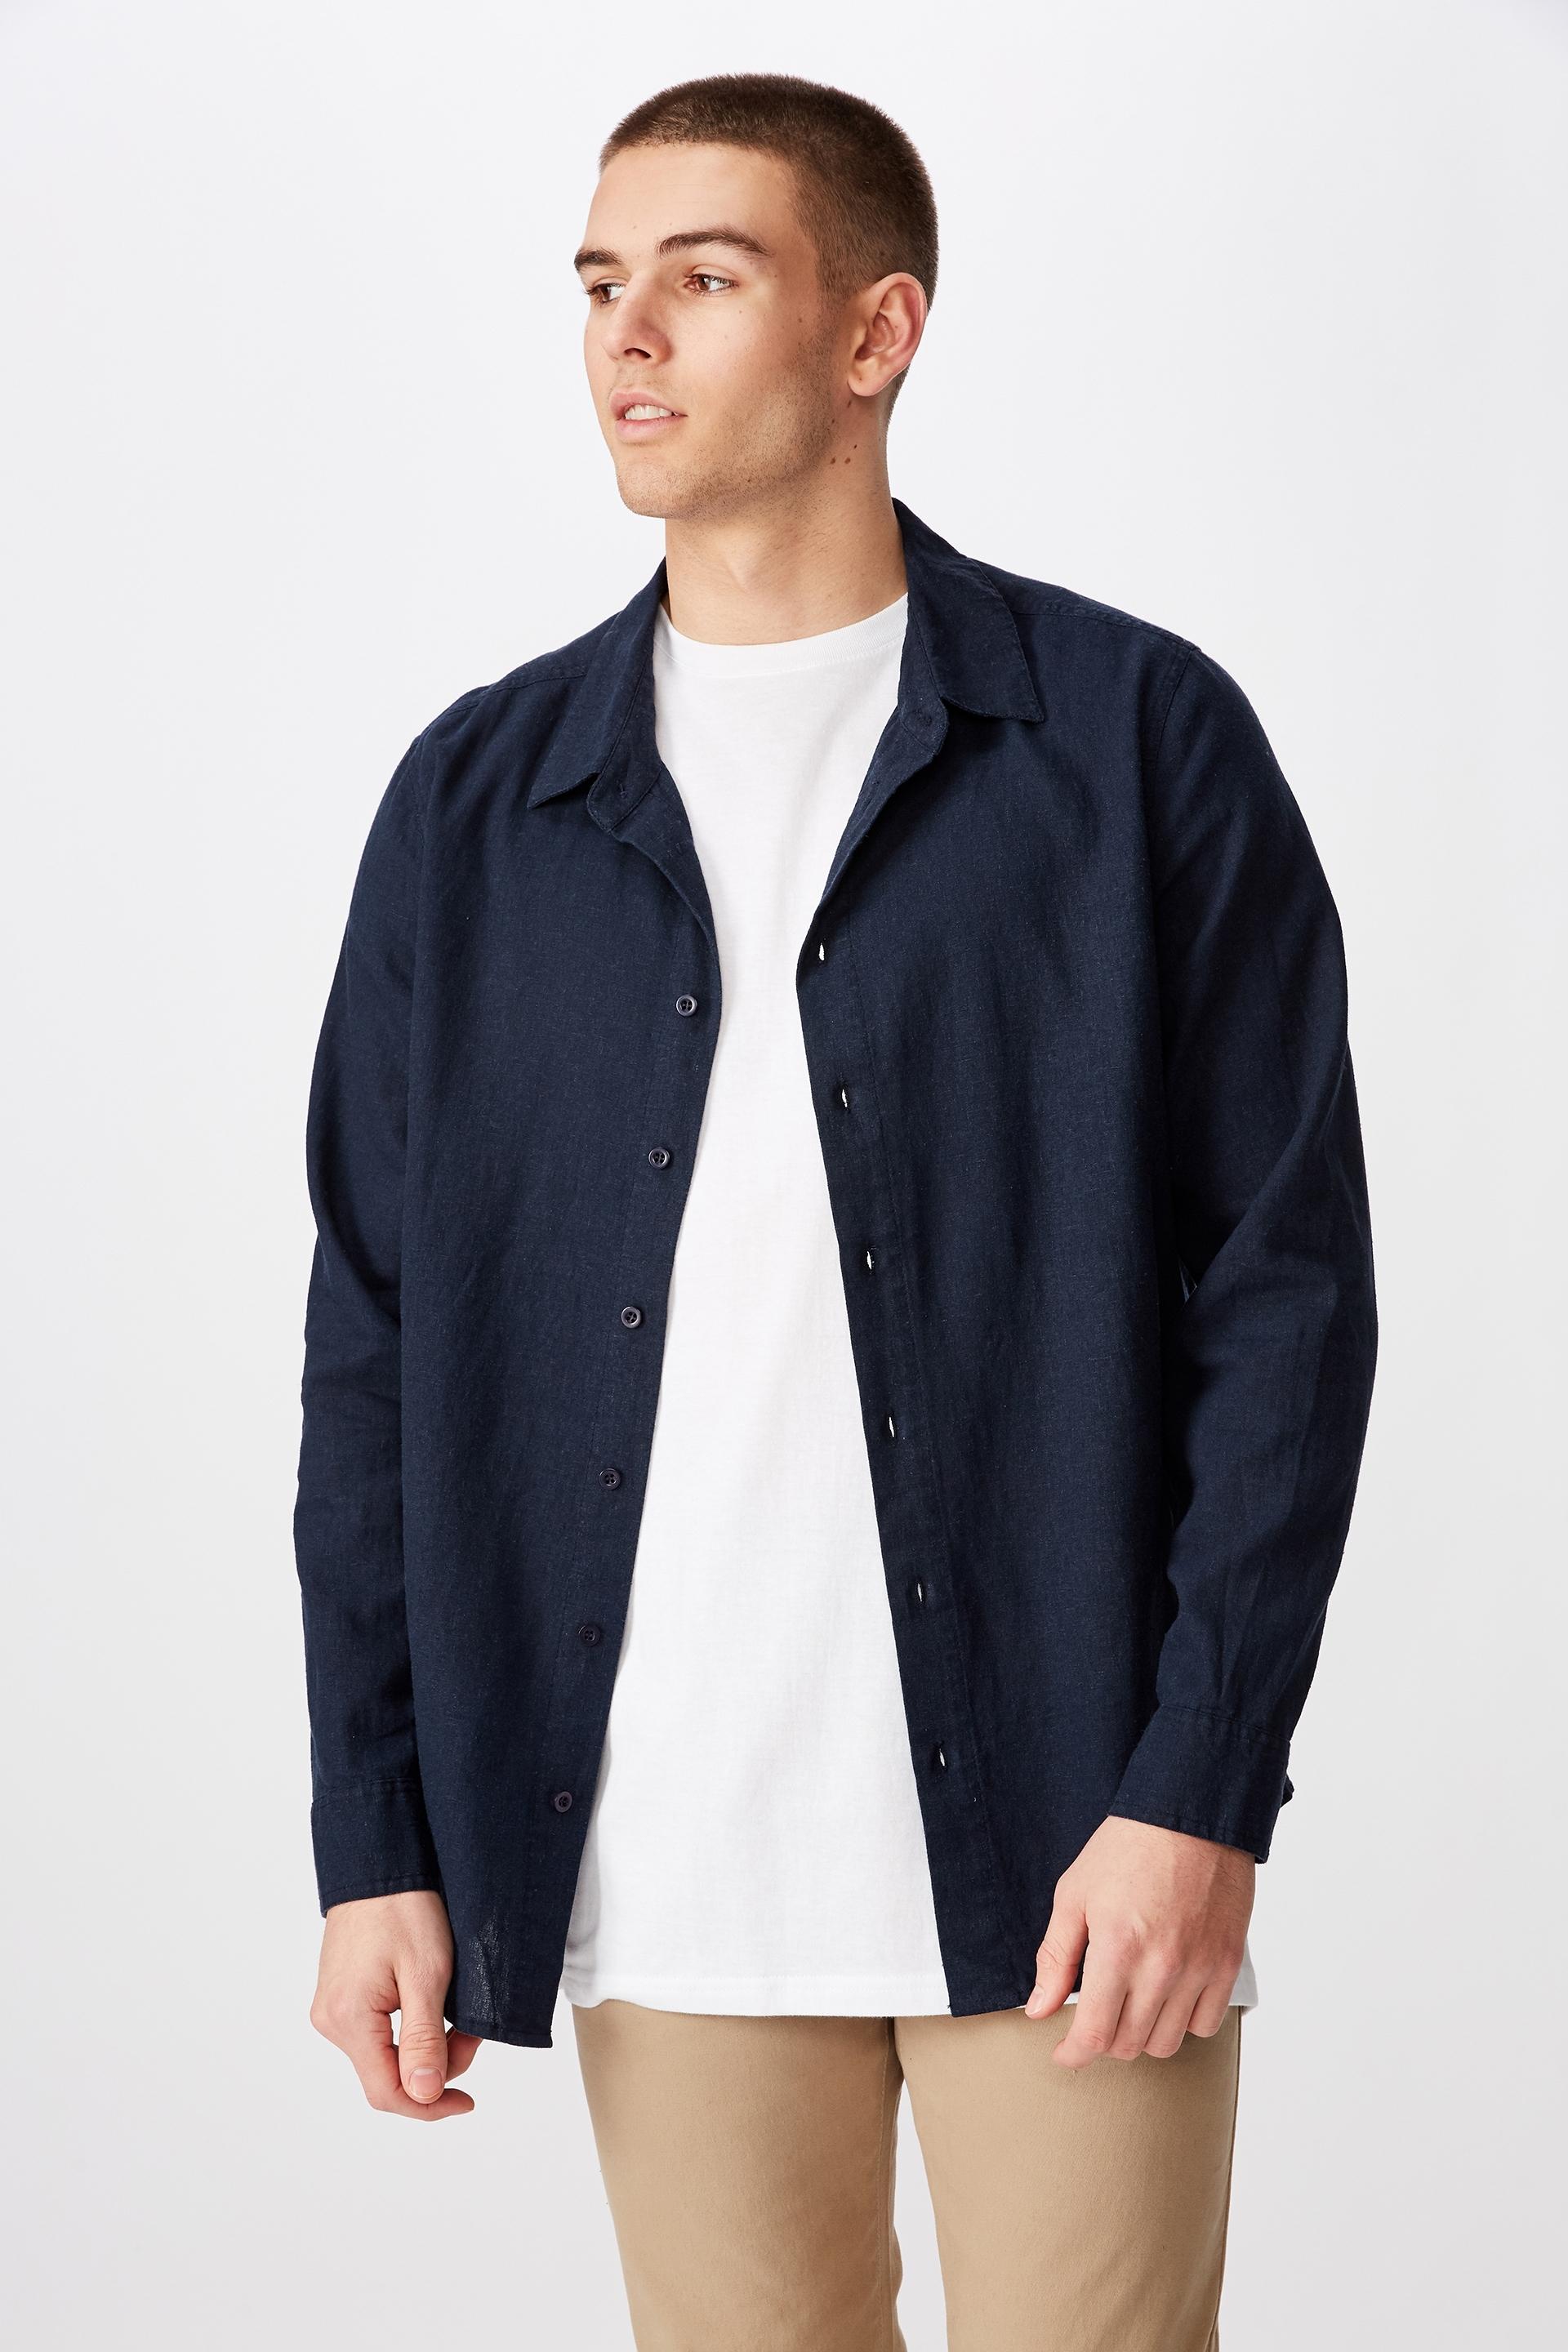 Long sleeve linen blend shirt-navy Factorie Shirts | Superbalist.com